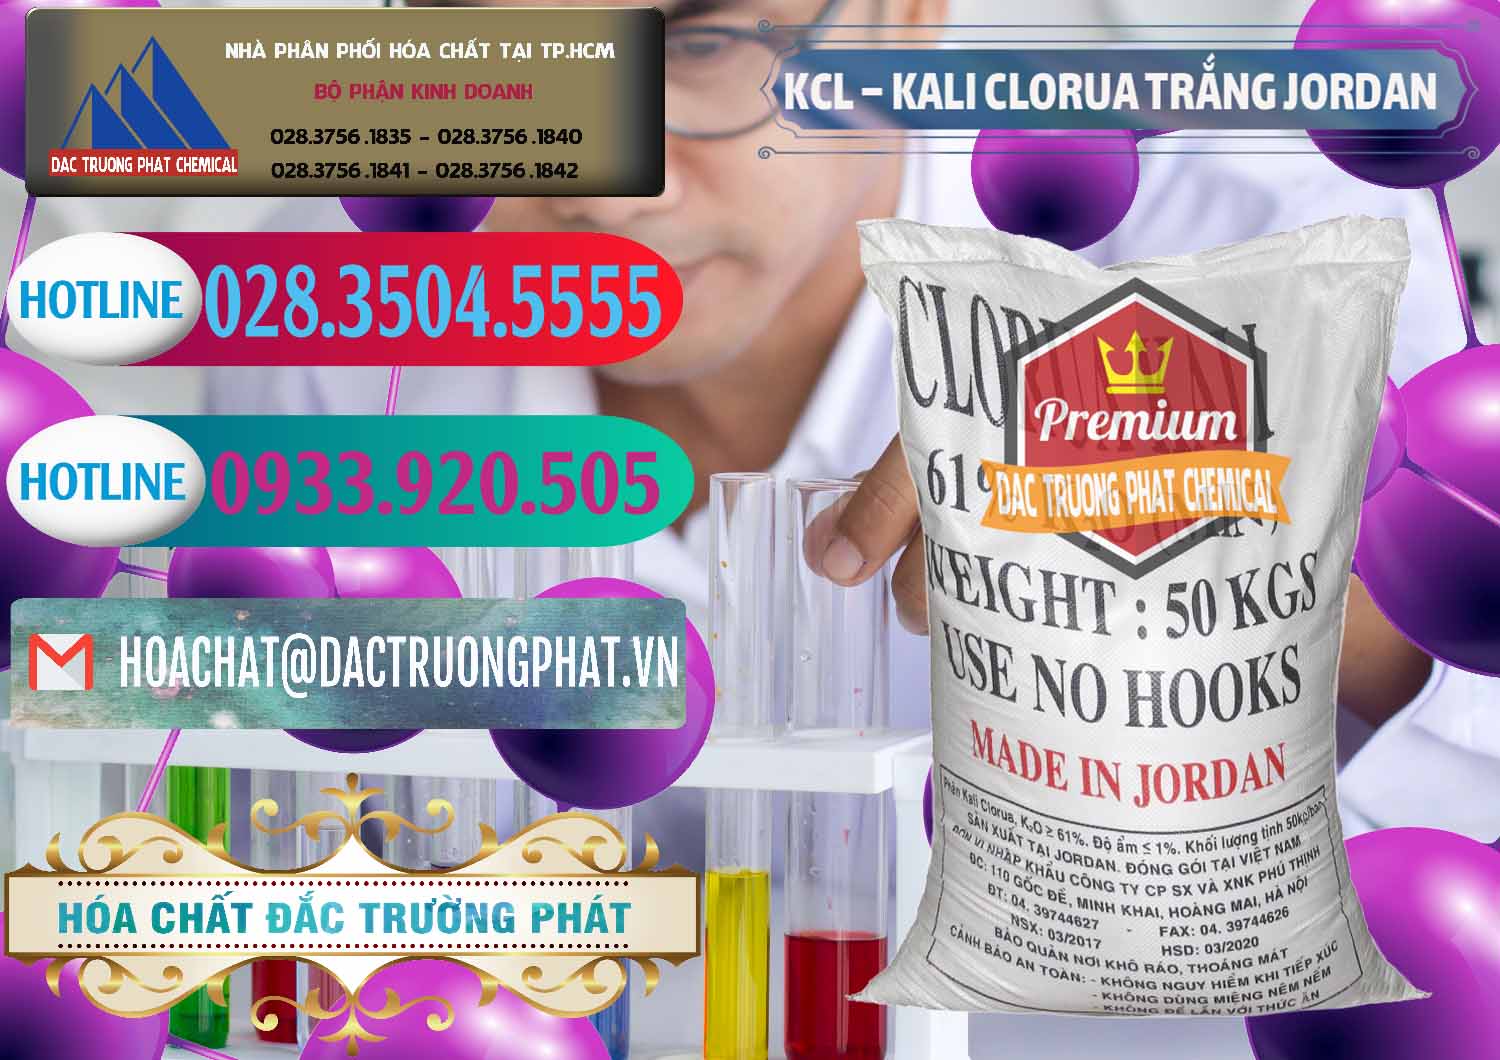 Chuyên kinh doanh - bán KCL – Kali Clorua Trắng Jordan - 0088 - Cty chuyên cung cấp ( nhập khẩu ) hóa chất tại TP.HCM - truongphat.vn